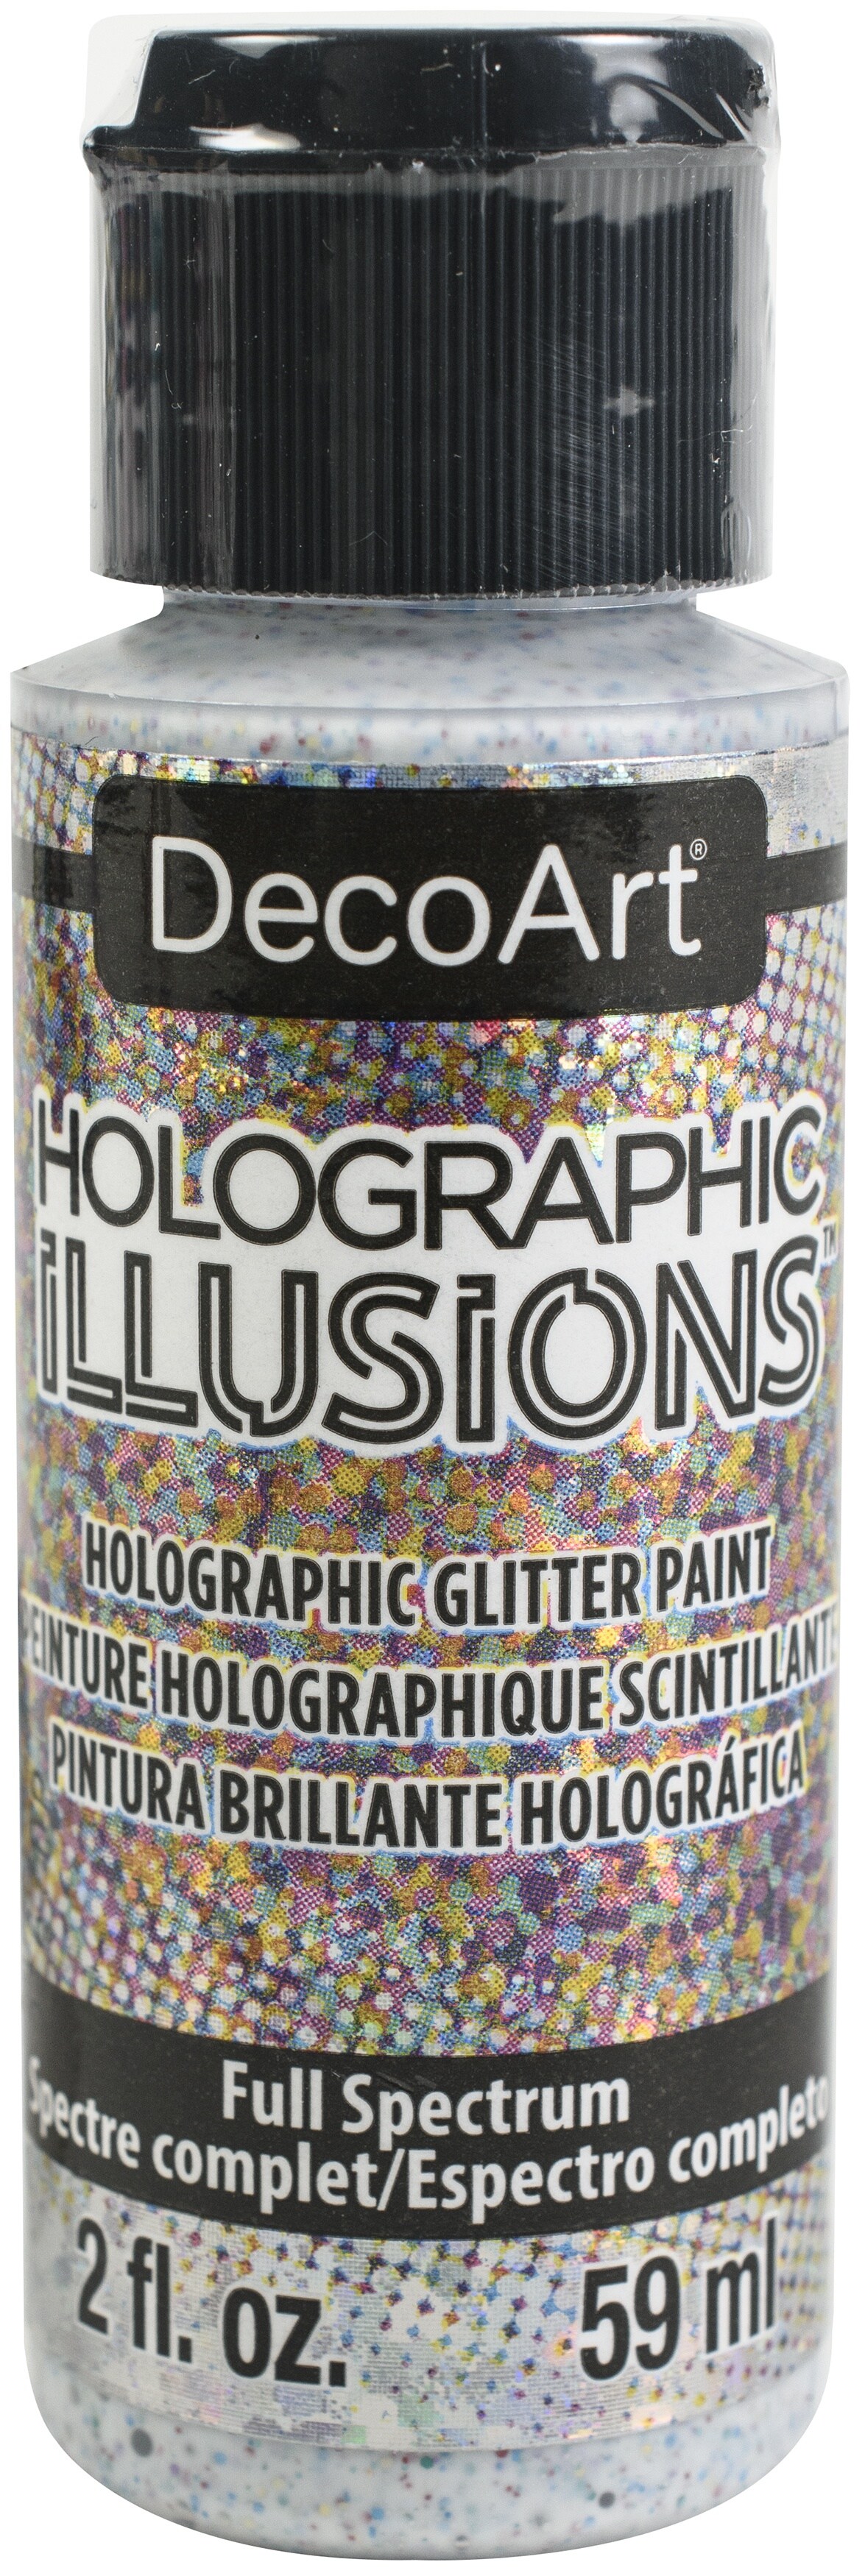 Decoart Holographic Illusions Paint 2oz Full Spectrum -Multi